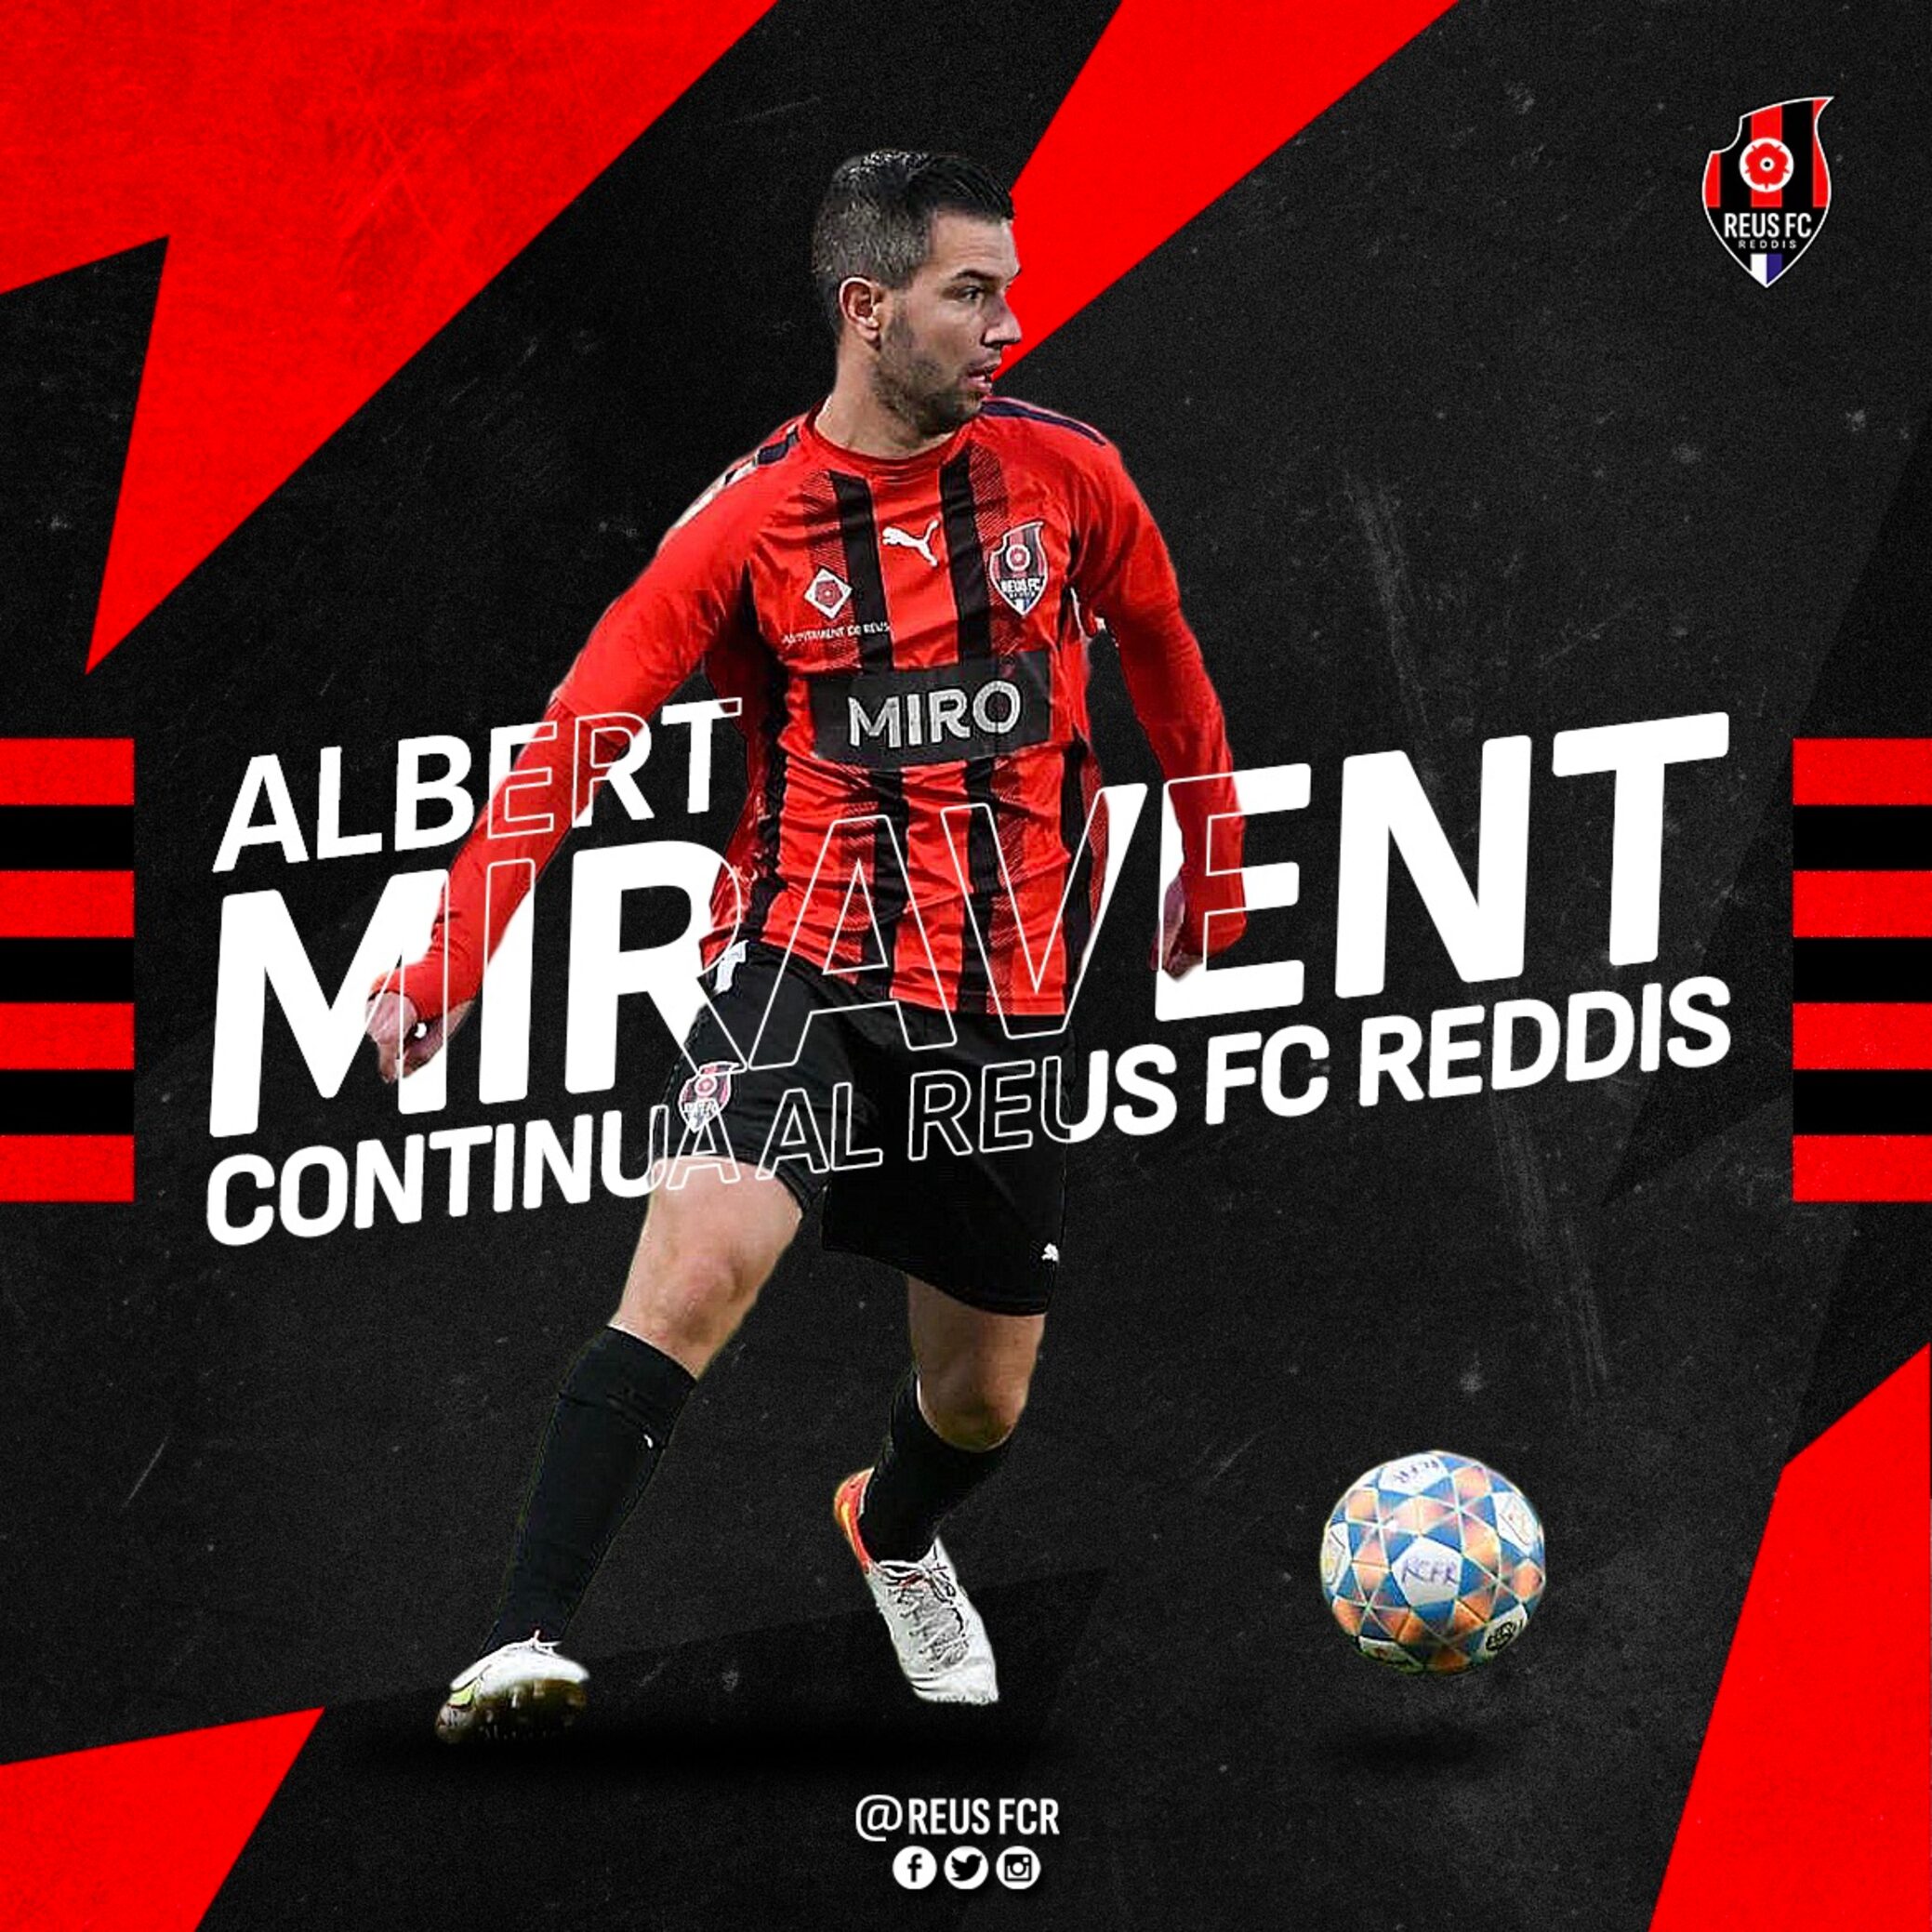 Albert Miravent renova amb el Reus FC Reddis